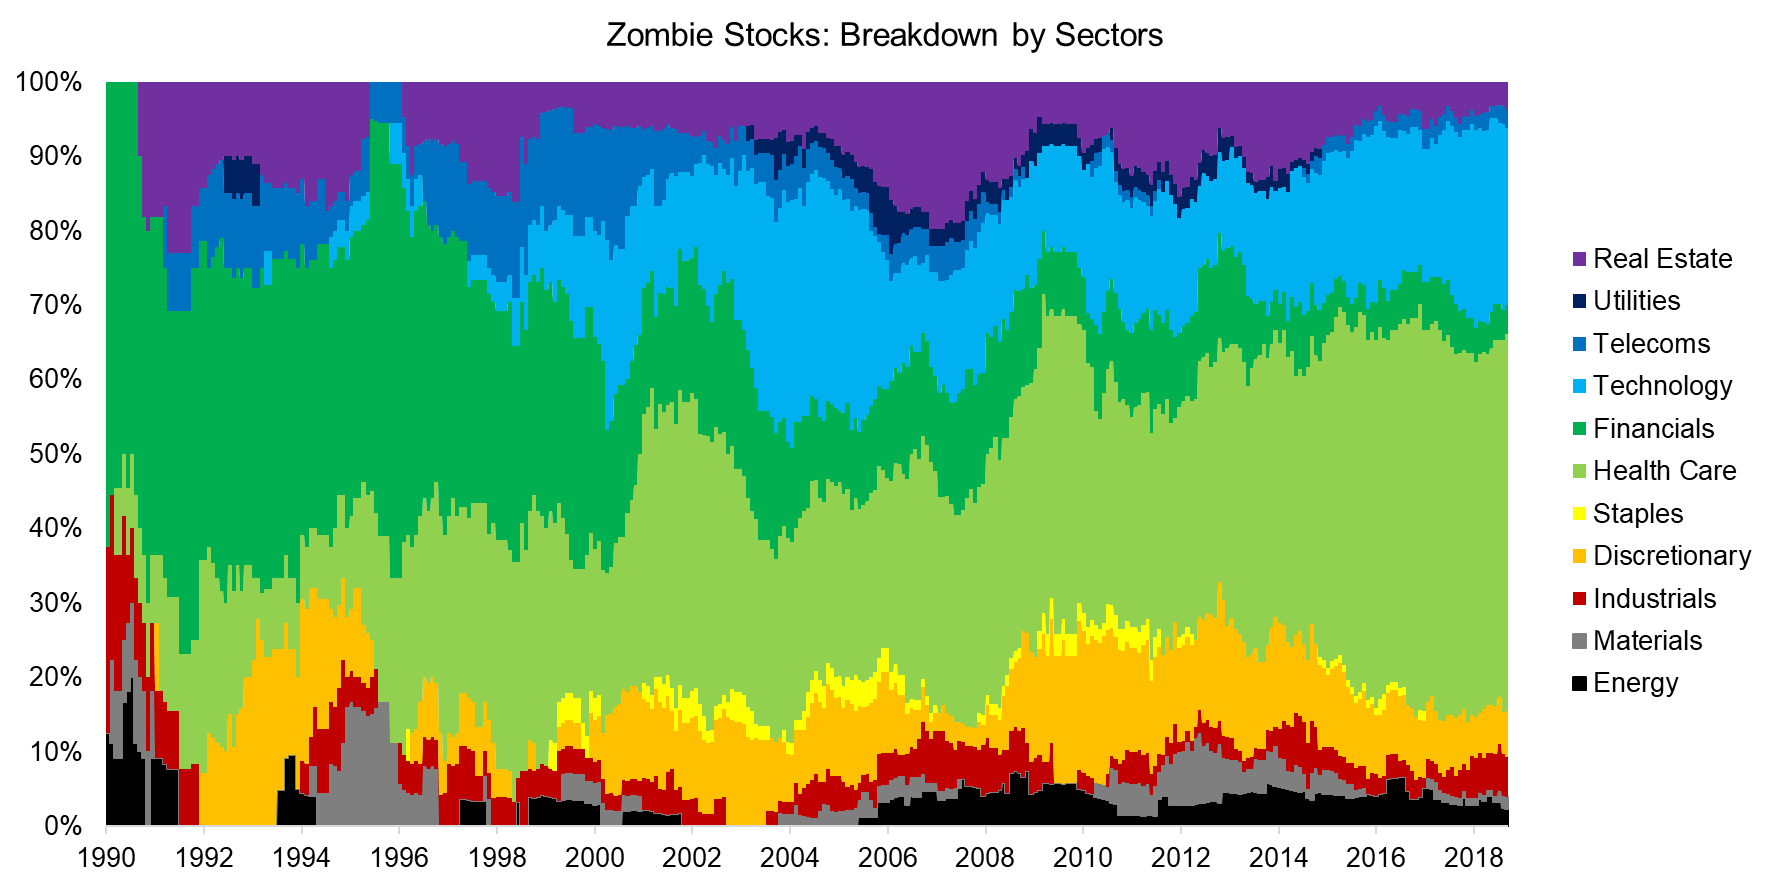 Zombie Stocks Breakdown by Sectors